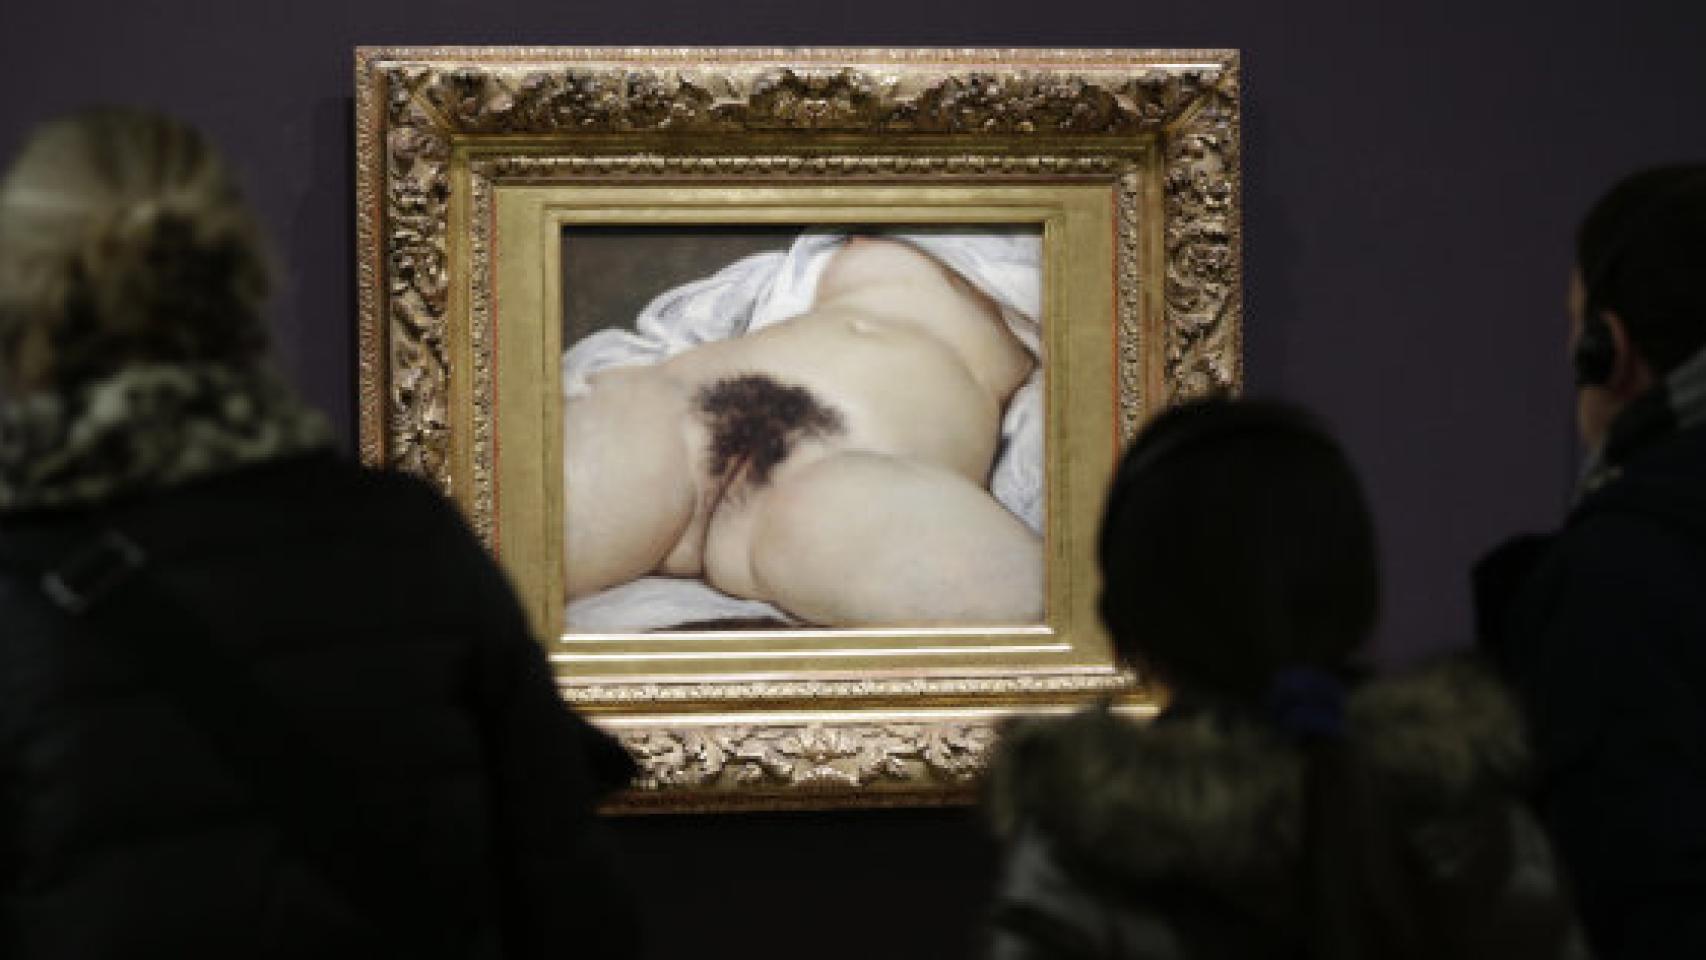 Visitantes observan 'El origen del mundo' en el Museo de Orsay.